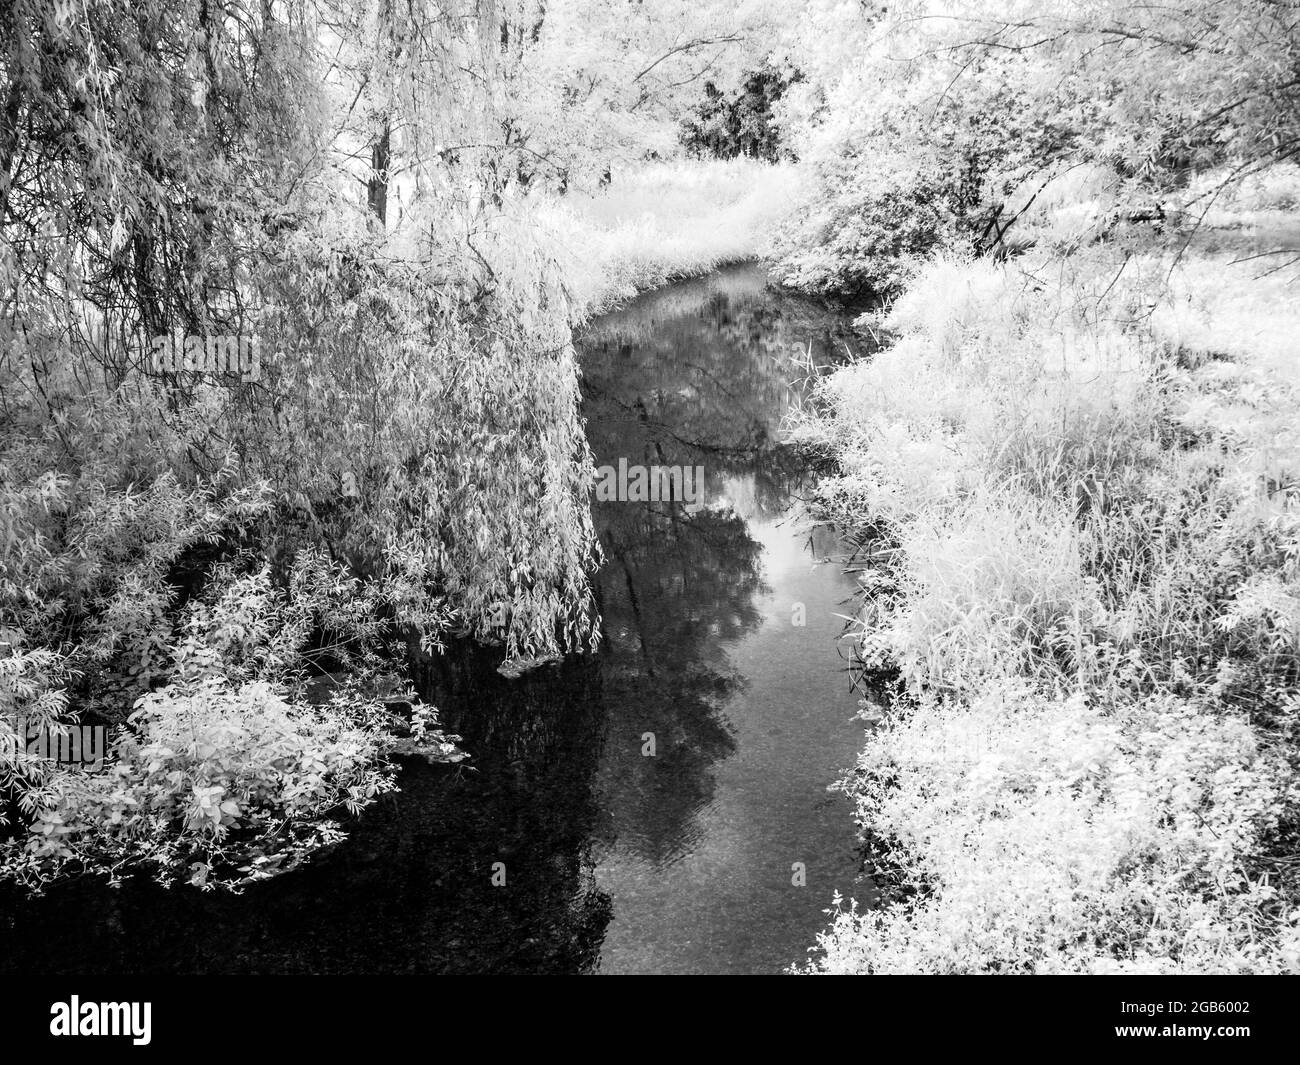 El río Kennett cerca de Marlborough en Wiltshire, filmado en infrarrojo. Foto de stock